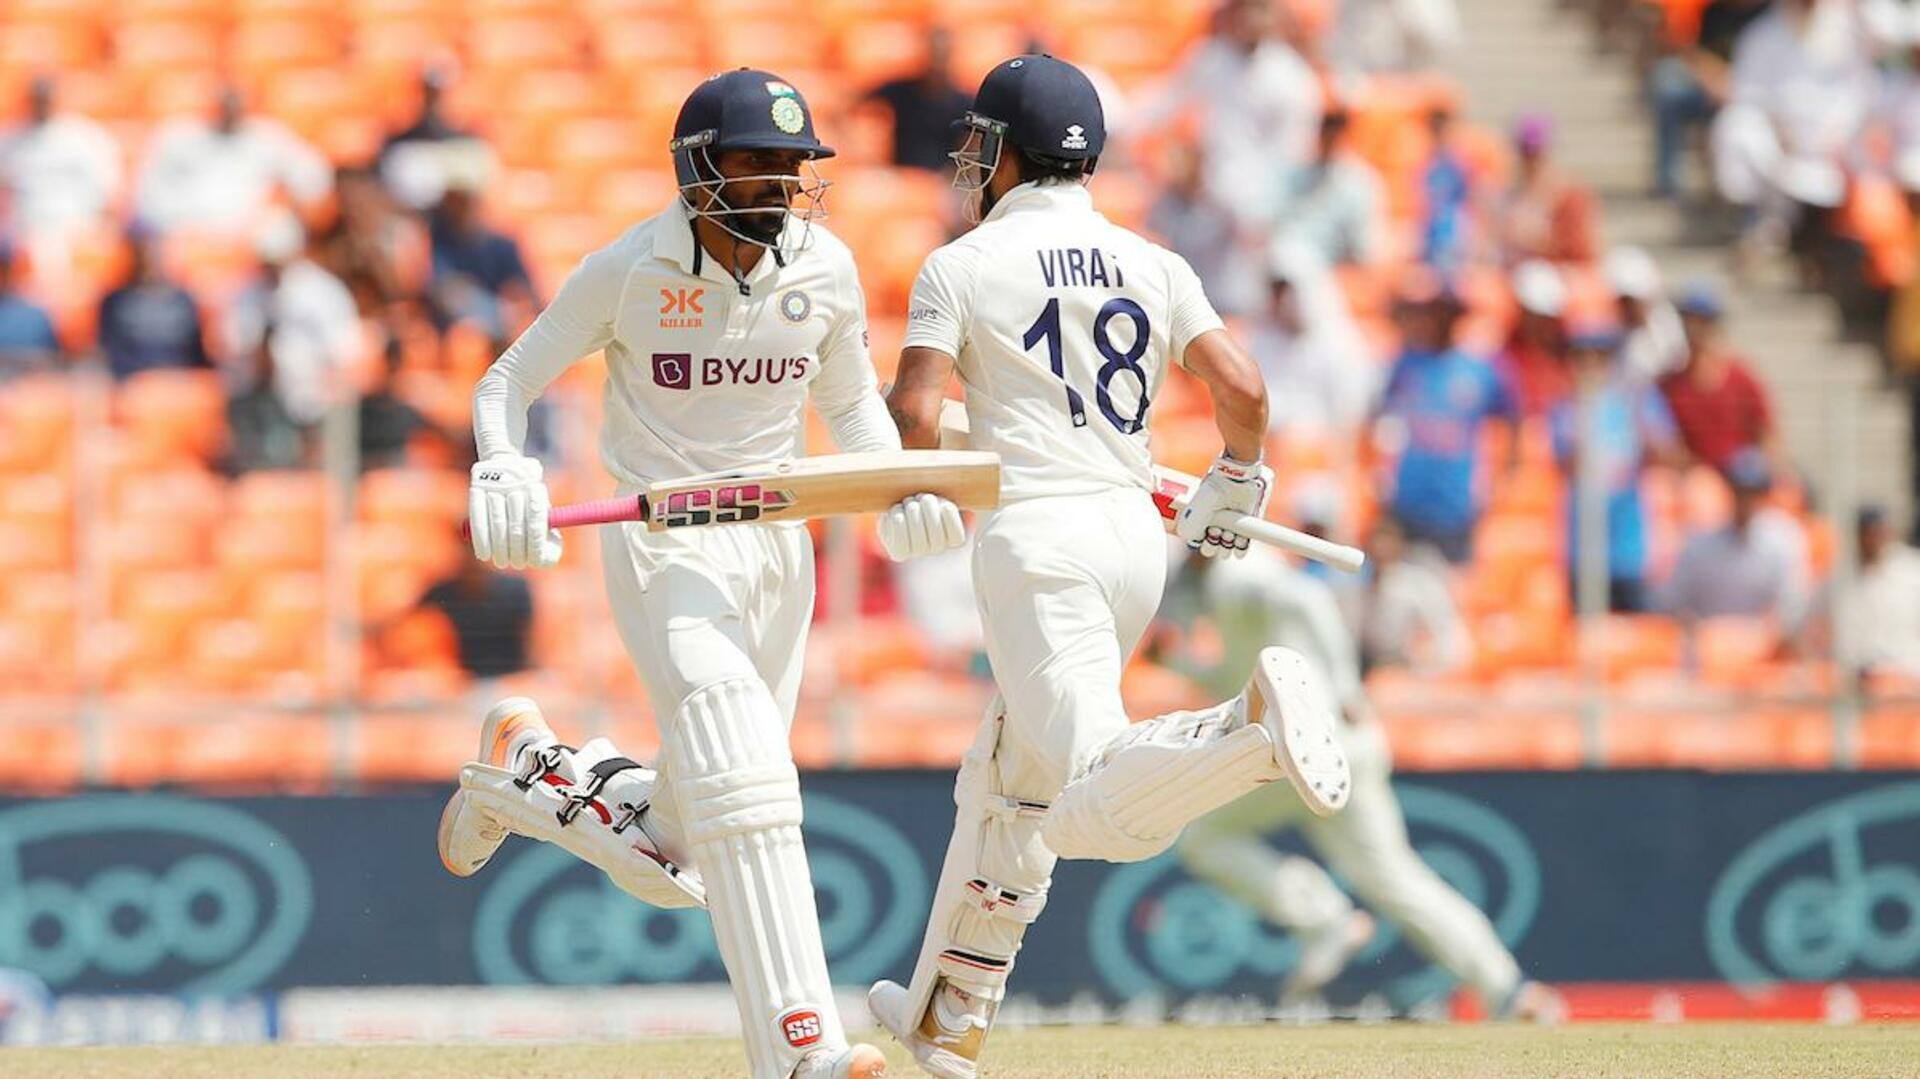 भारत बनाम ऑस्ट्रेलिया: भरत ने बनाया अपना सर्वोच्च टेस्ट स्कोर, कोहली के साथ की अहम साझेदारी 